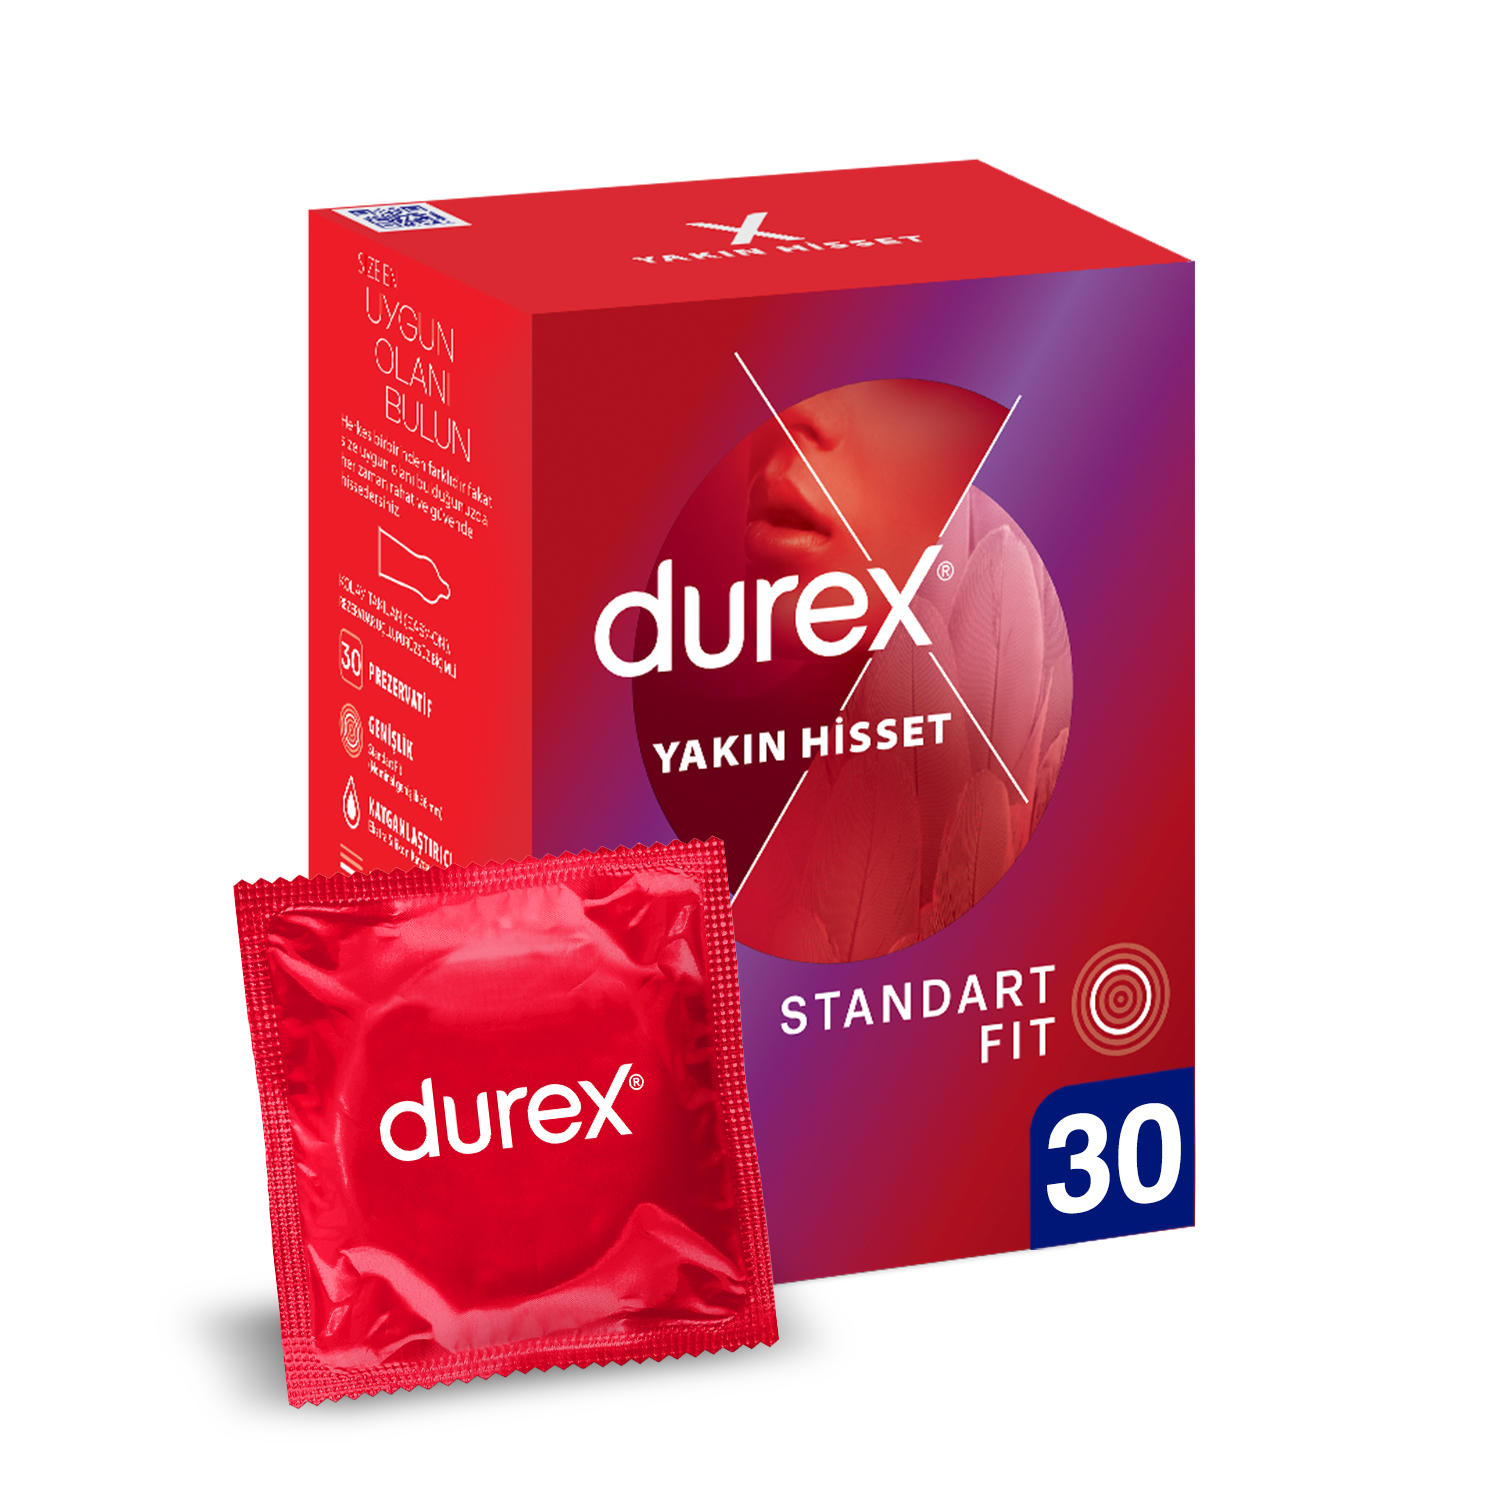 Durex Yakın Hisset 30'lu İnce Prezervatif Ekonomik Avantaj Paket